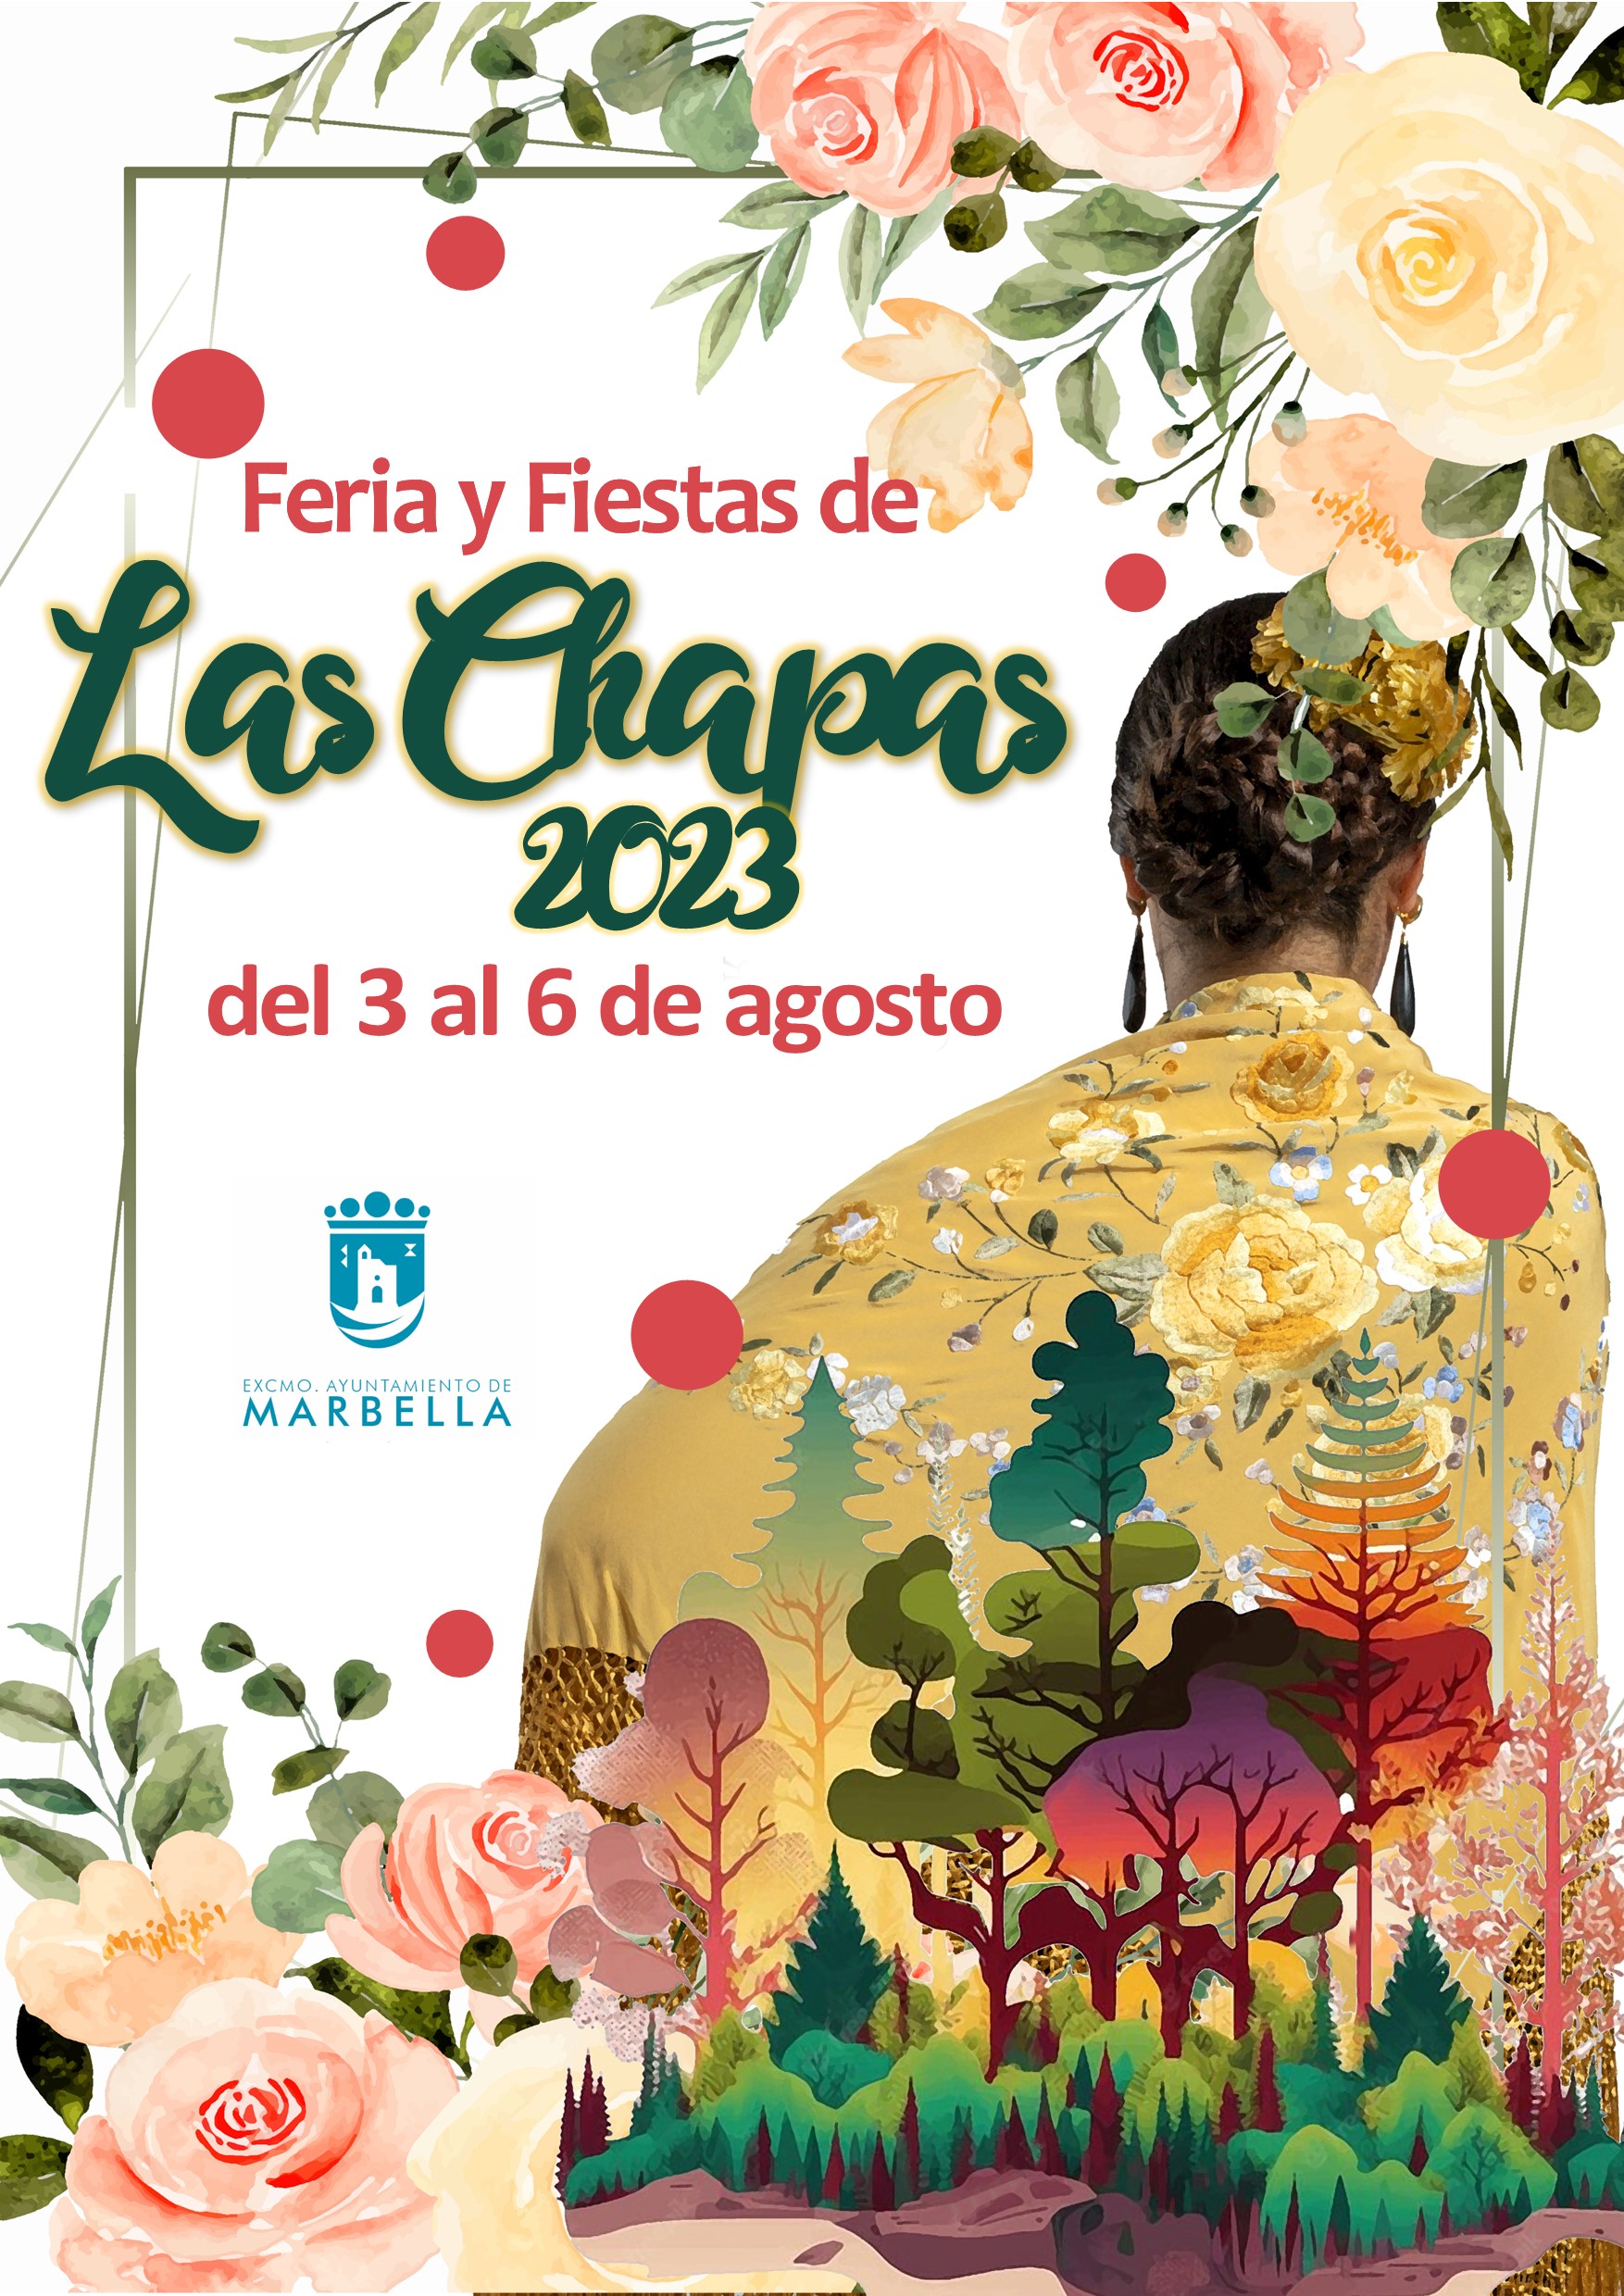 Presentado el cartel anunciador de la Feria de Las Chapas, obra de Manuel Blánquez Venzalá